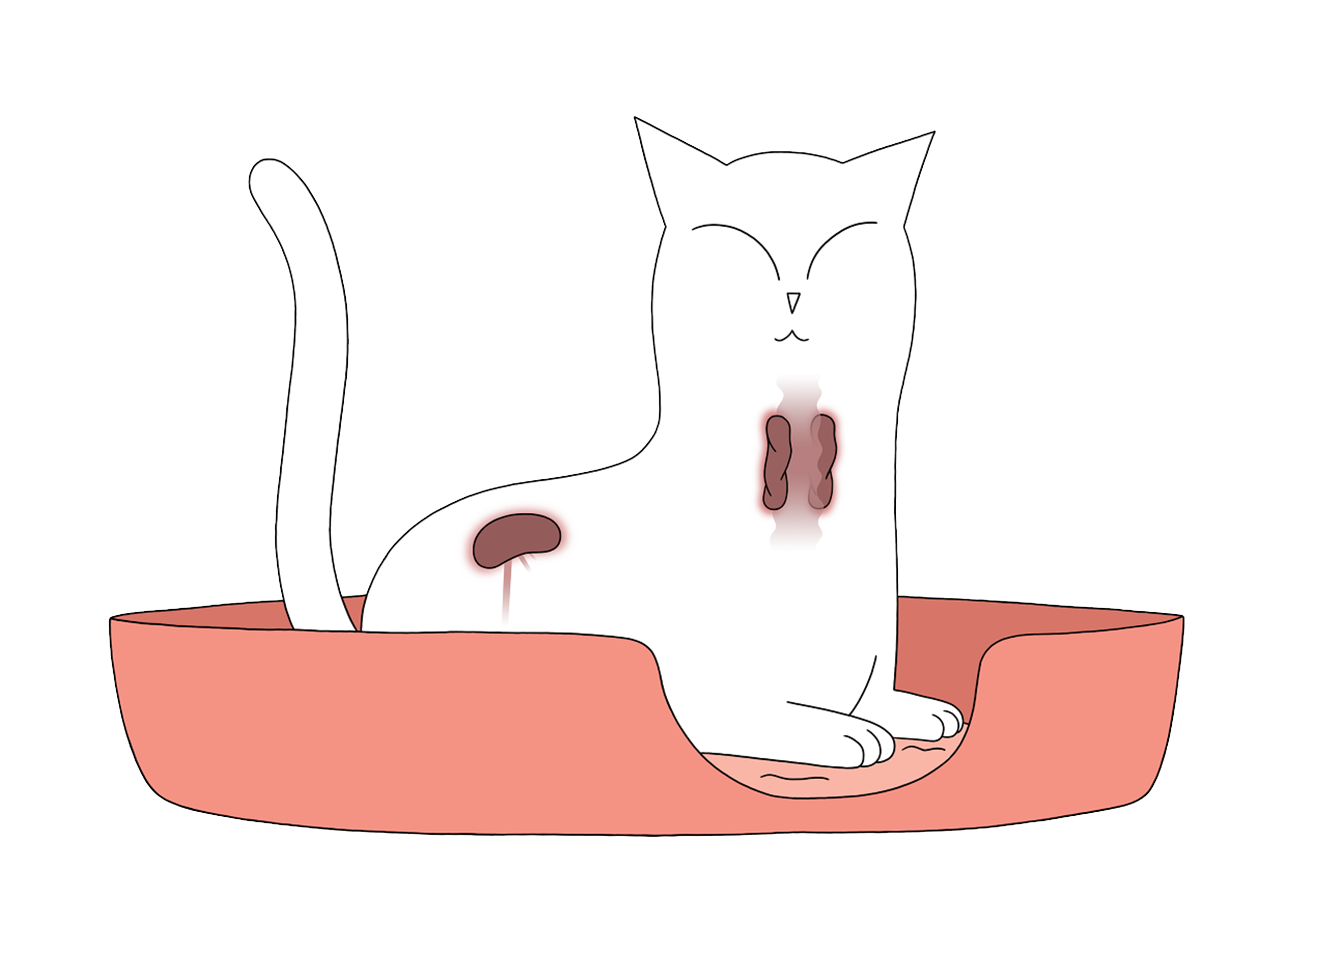 Katt där sköldkörtel och njure är illustrerade eftersom dessa kan vara kopplade till högt blodtryck (hypertension)